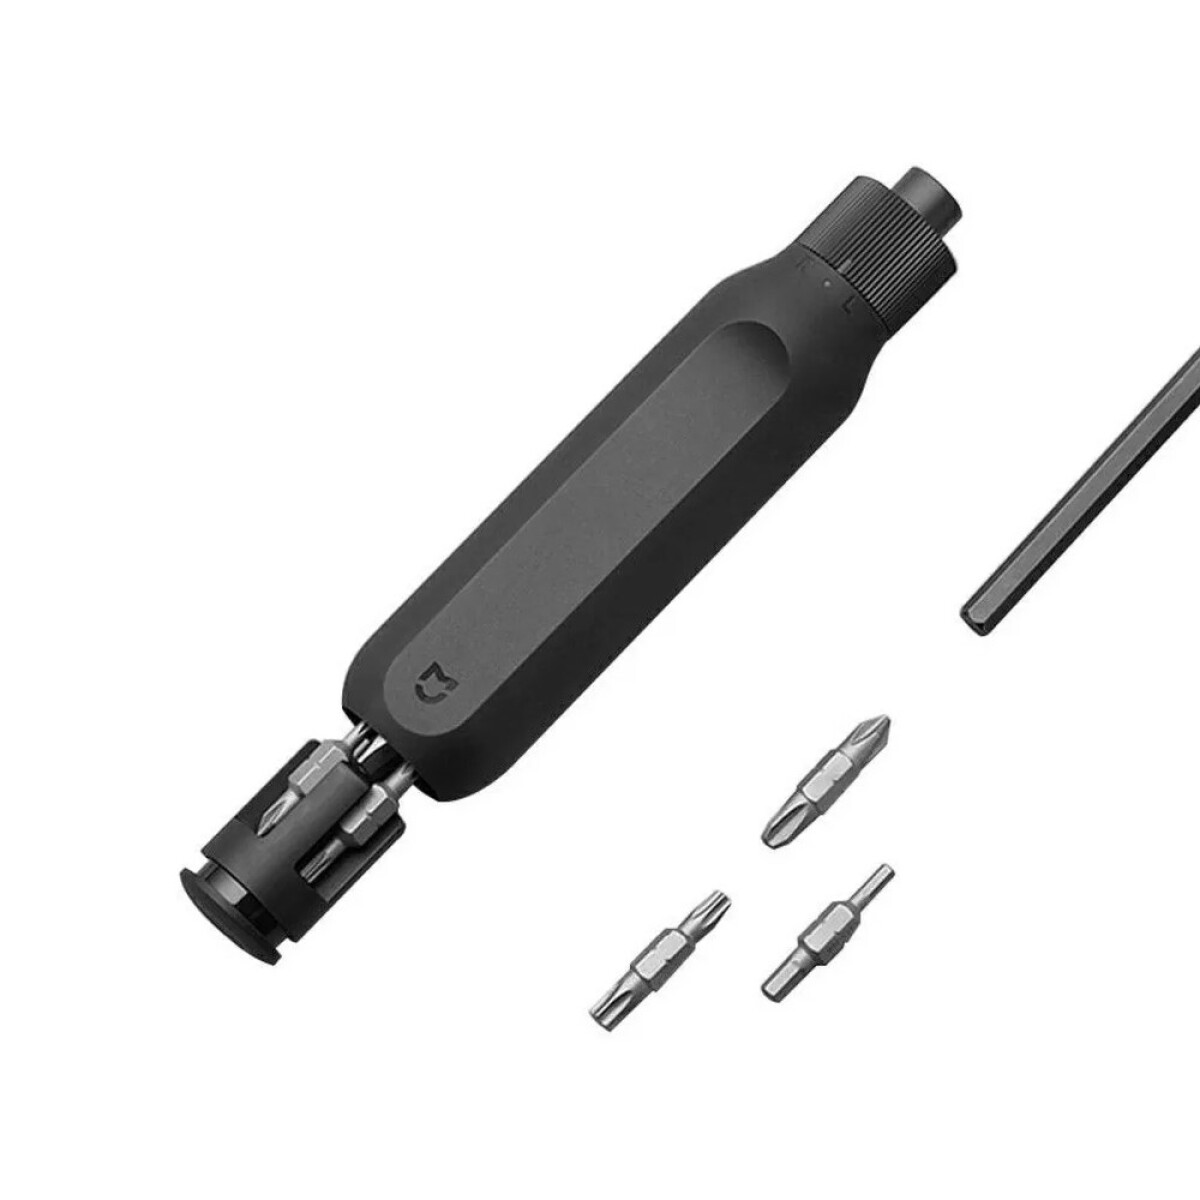 Destornillador Xiaomi Mi 16 en 1 Ratchet Screwdriver | 16 Puntas Intercambiables Transparente